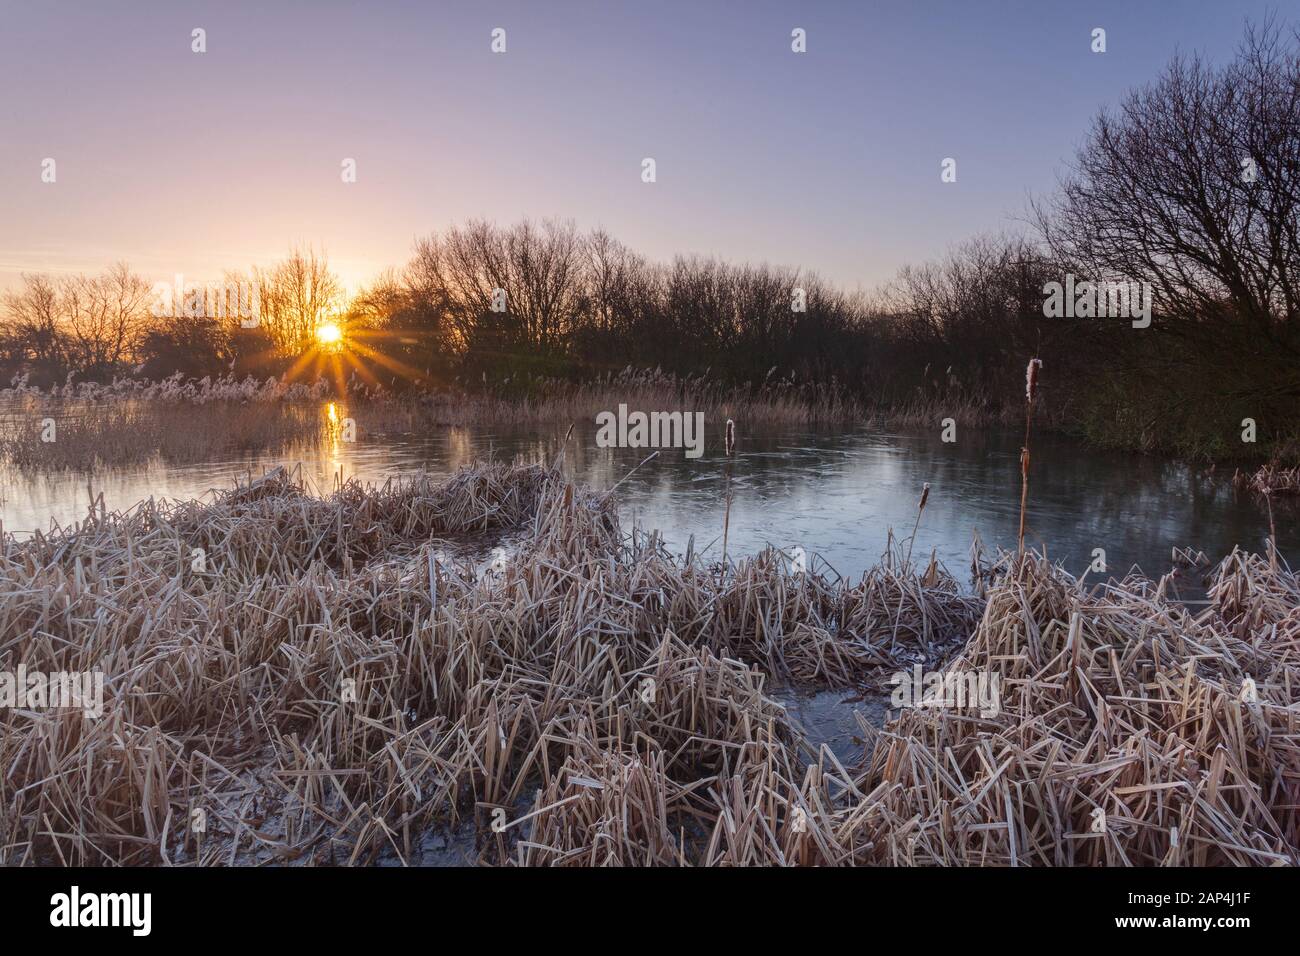 Barton-upon-Humber, Norte de Lincolnshire, Reino Unido. 21 de enero de 2020. El clima del Reino Unido: el amanecer en una helada mañana de invierno en una reserva natural. Crédito: LEE BEEL/Alamy Live News. Foto de stock